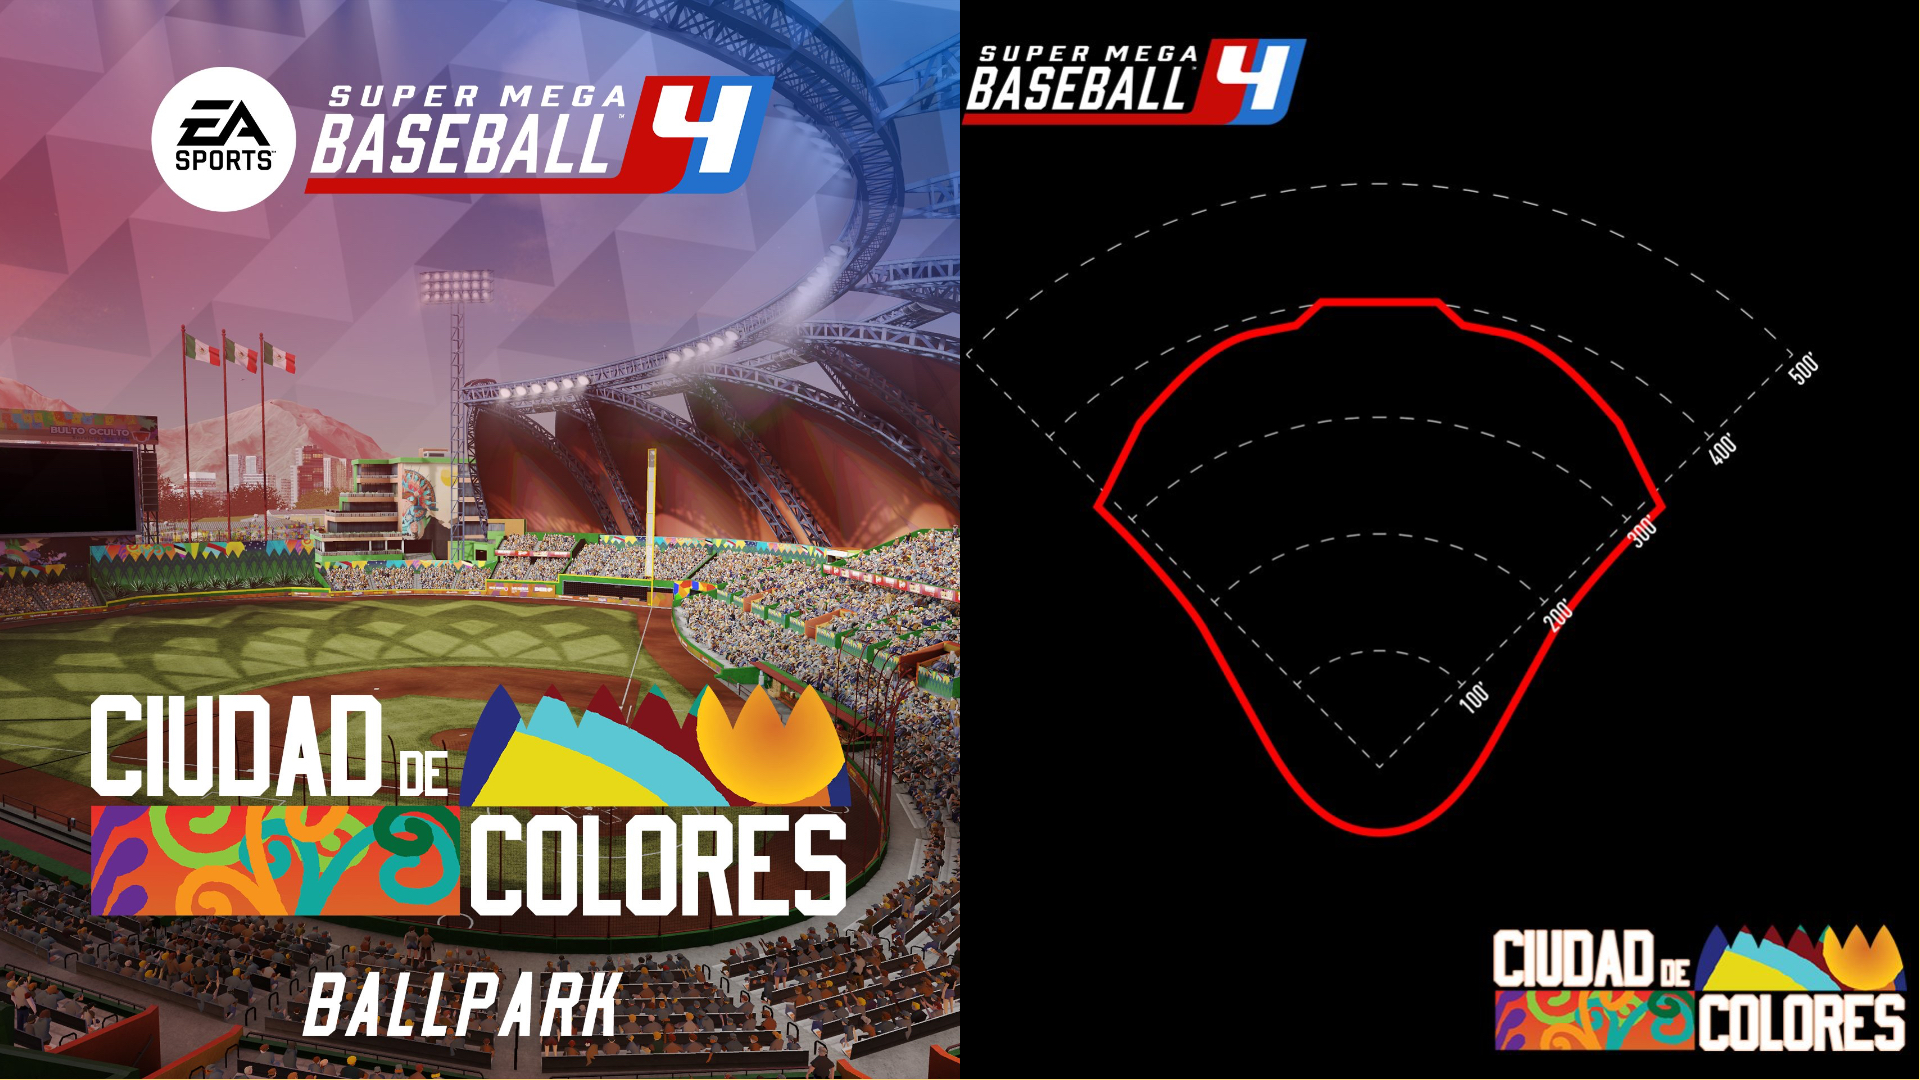 Super Mega Baseball 4 DLC #2 - Ciudad de Colores Ballpark Revealed